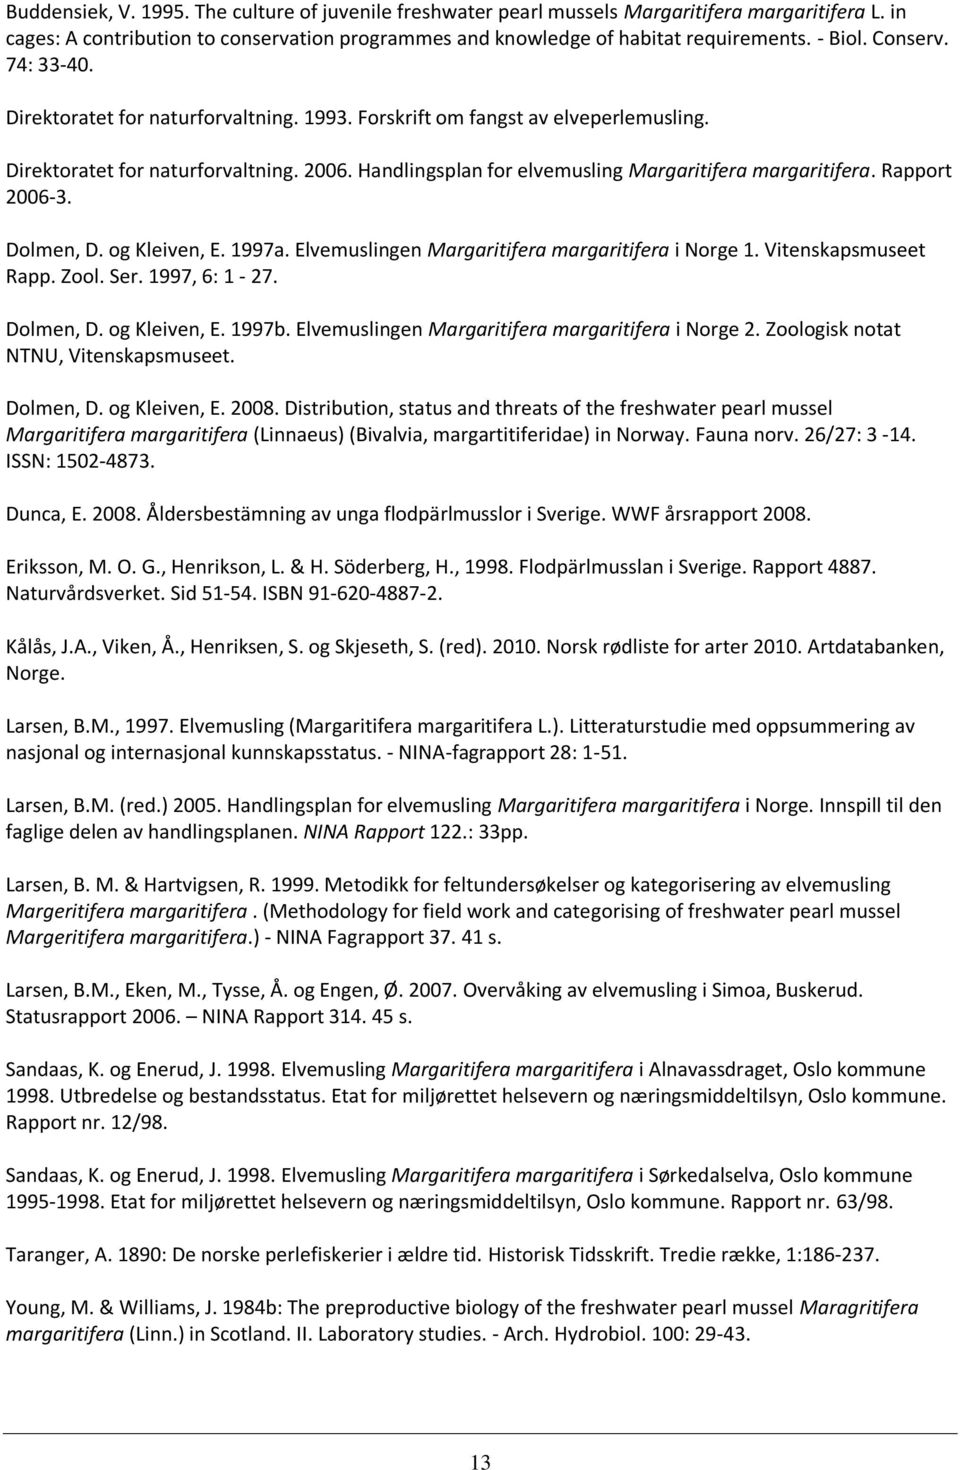 Handlingsplan for elvemusling Margaritifera margaritifera. Rapport 2006-3. Dolmen, D. og Kleiven, E. 1997a. Elvemuslingen Margaritifera margaritifera i Norge 1. Vitenskapsmuseet Rapp. Zool. Ser.